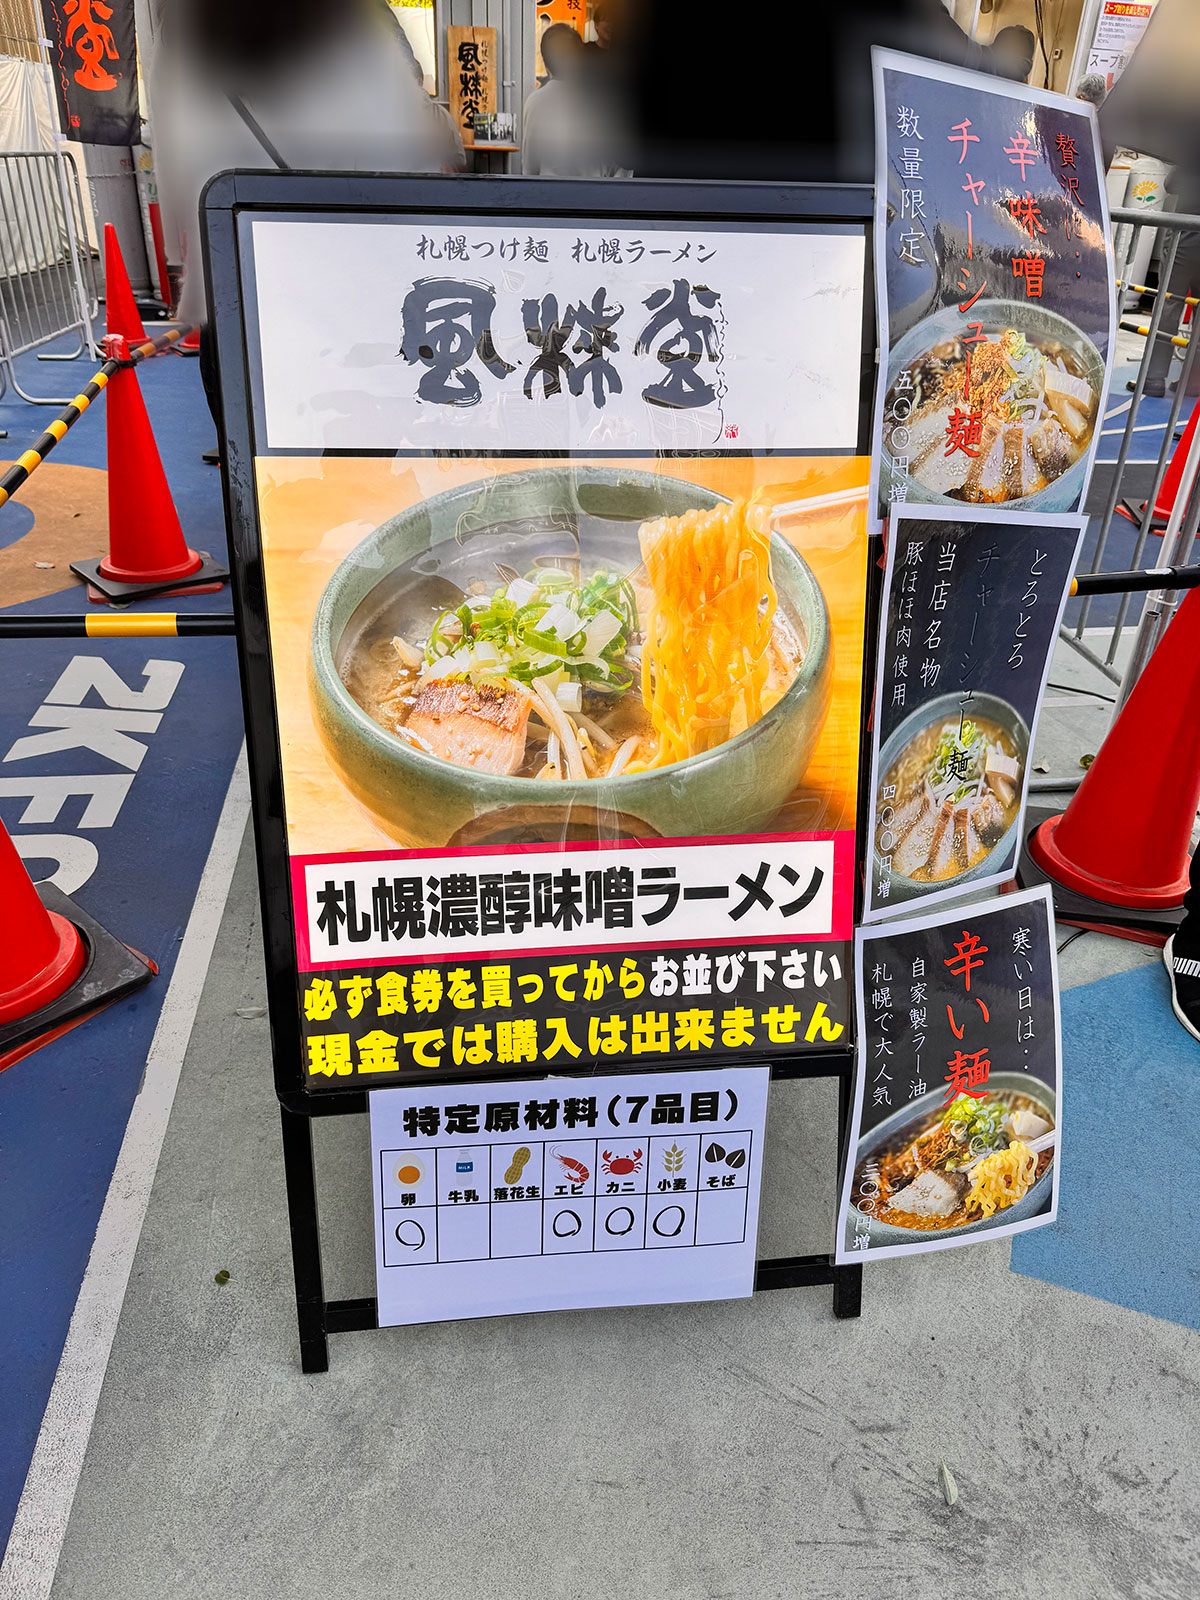 札幌つけ麺 札幌ラーメン 風来堂ブース入口に掲示された商品案内。